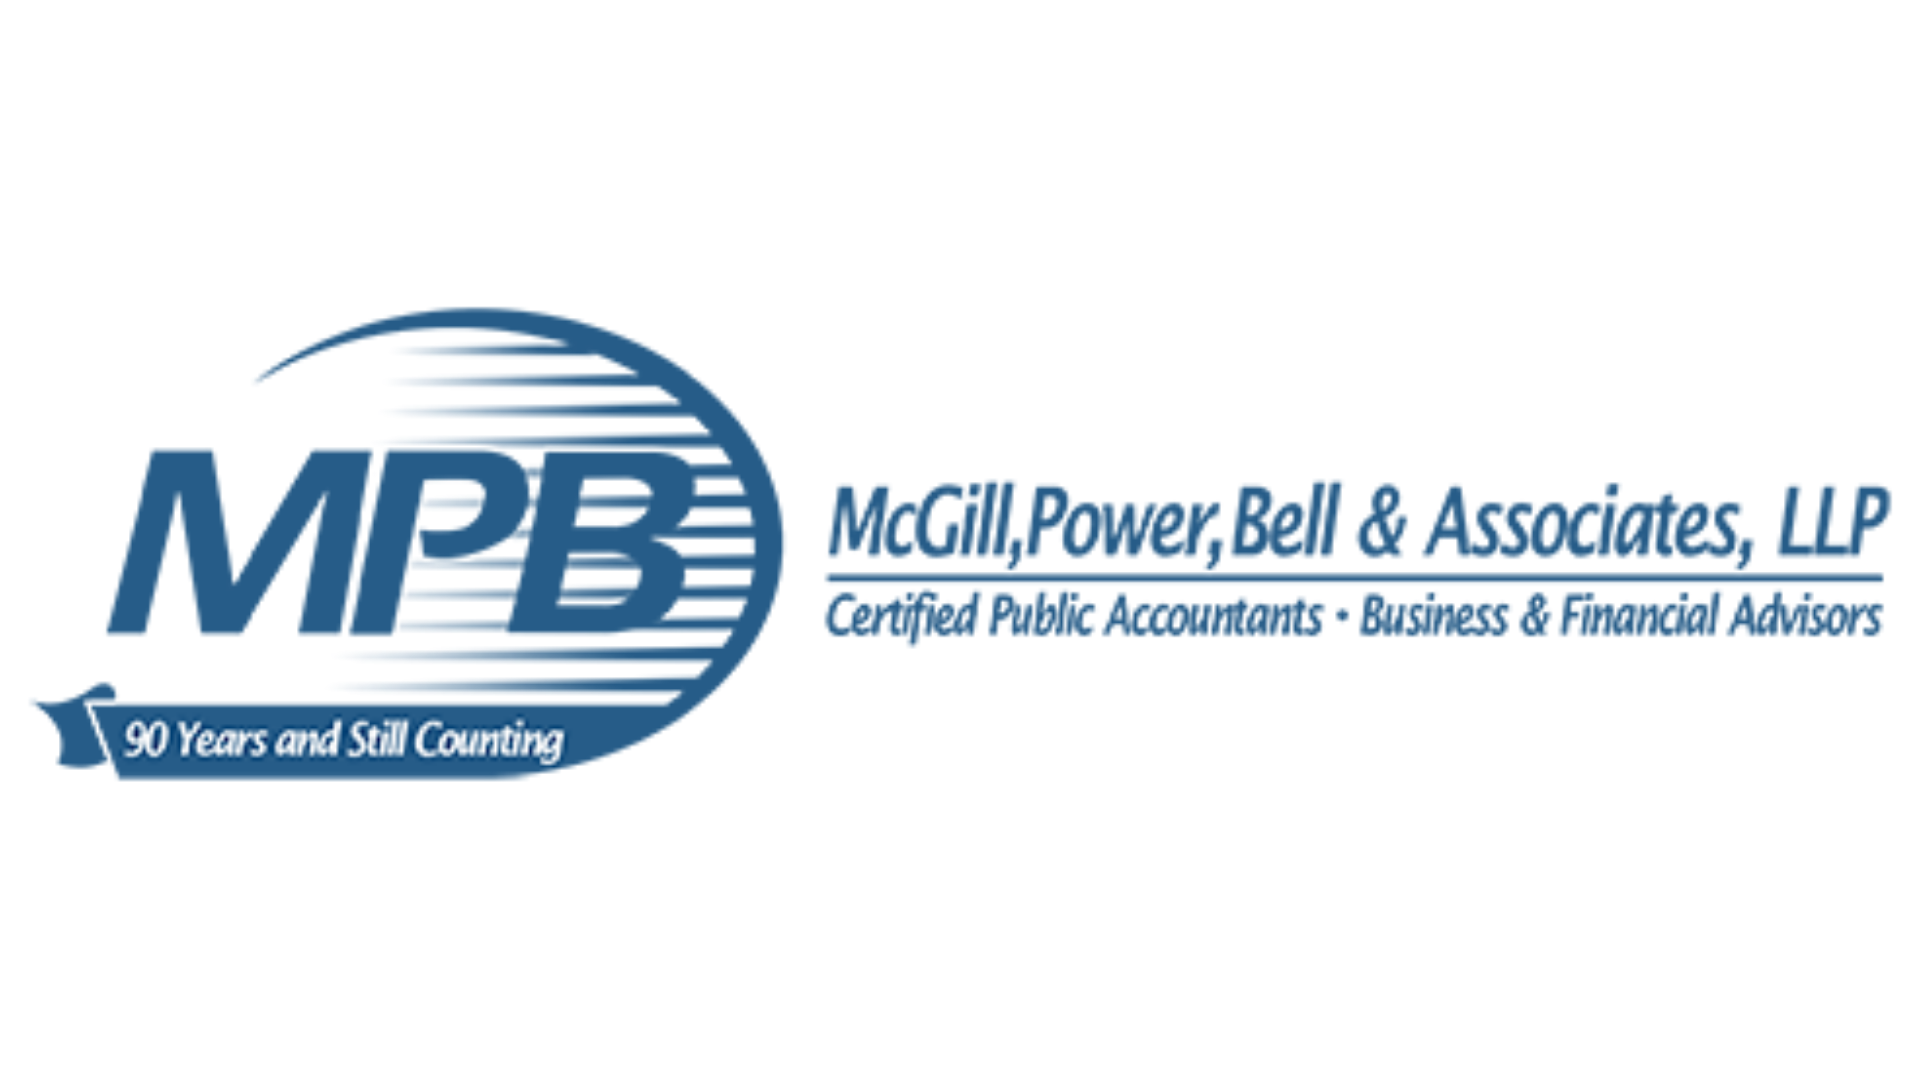 McGill Power Bell